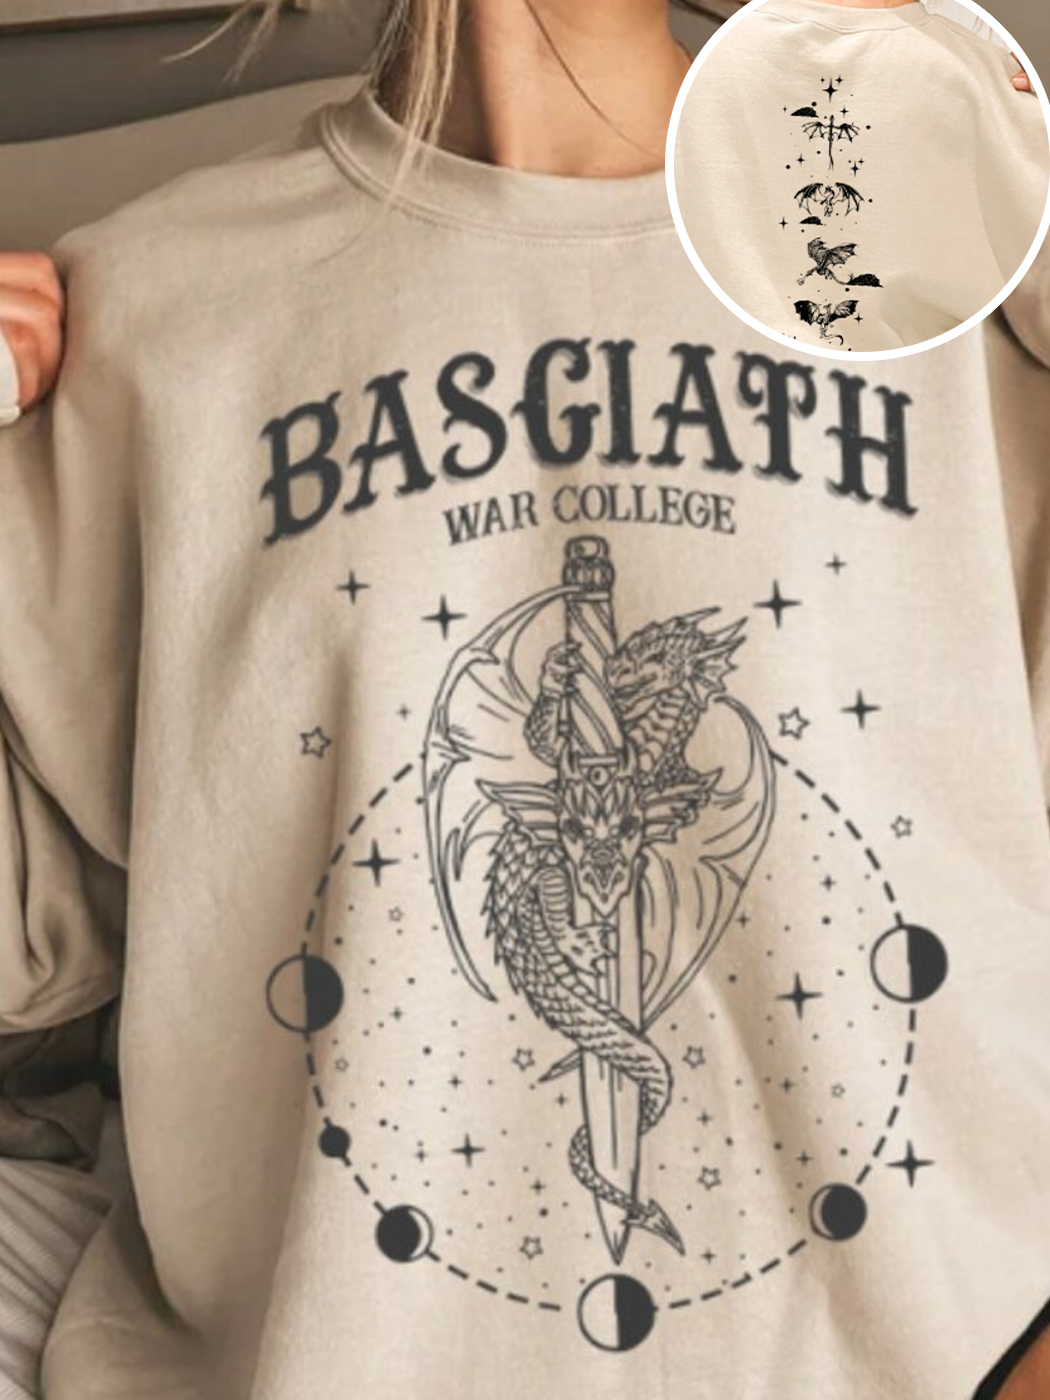 Vintage Basgiath War College Sweatshirt / DarkAcademias /Darkacademias